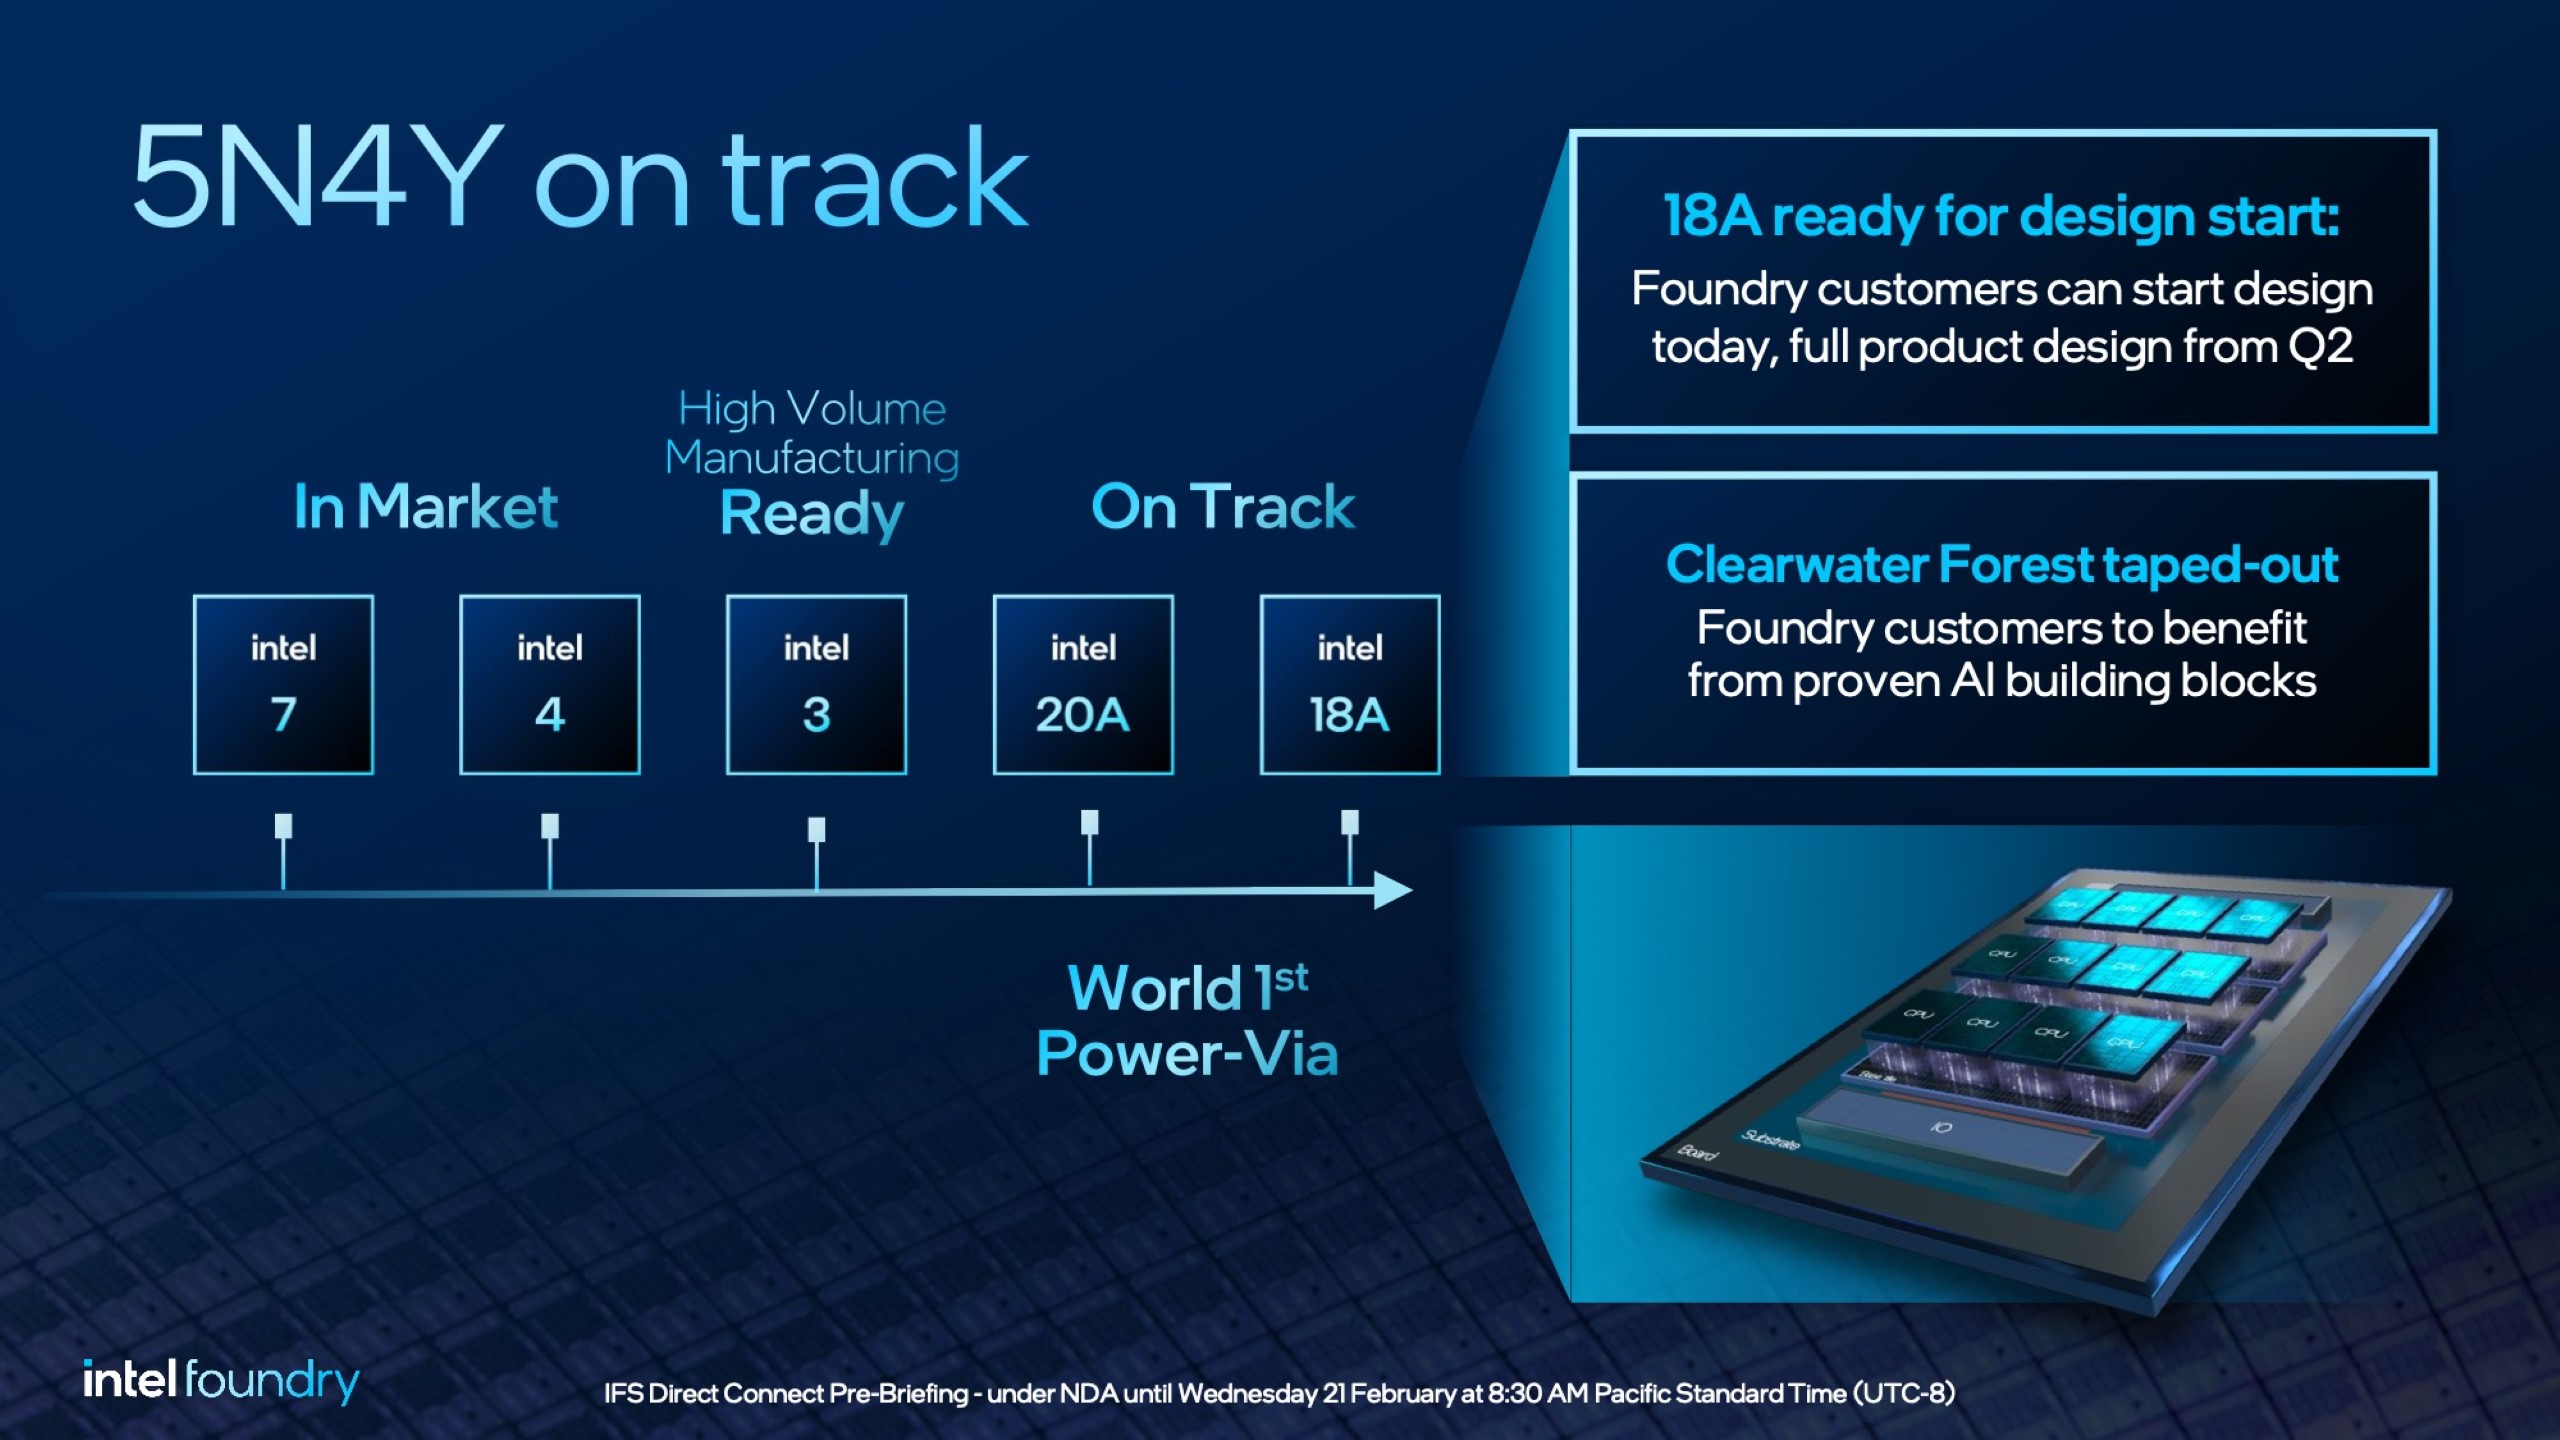 Intel fügt 14A-Prozessknoten zu seiner Roadmap hinzu, Aktualisierungen für 18A- und Intel 3-Knoten werden auf der IFS Direct 3 vorgestellt